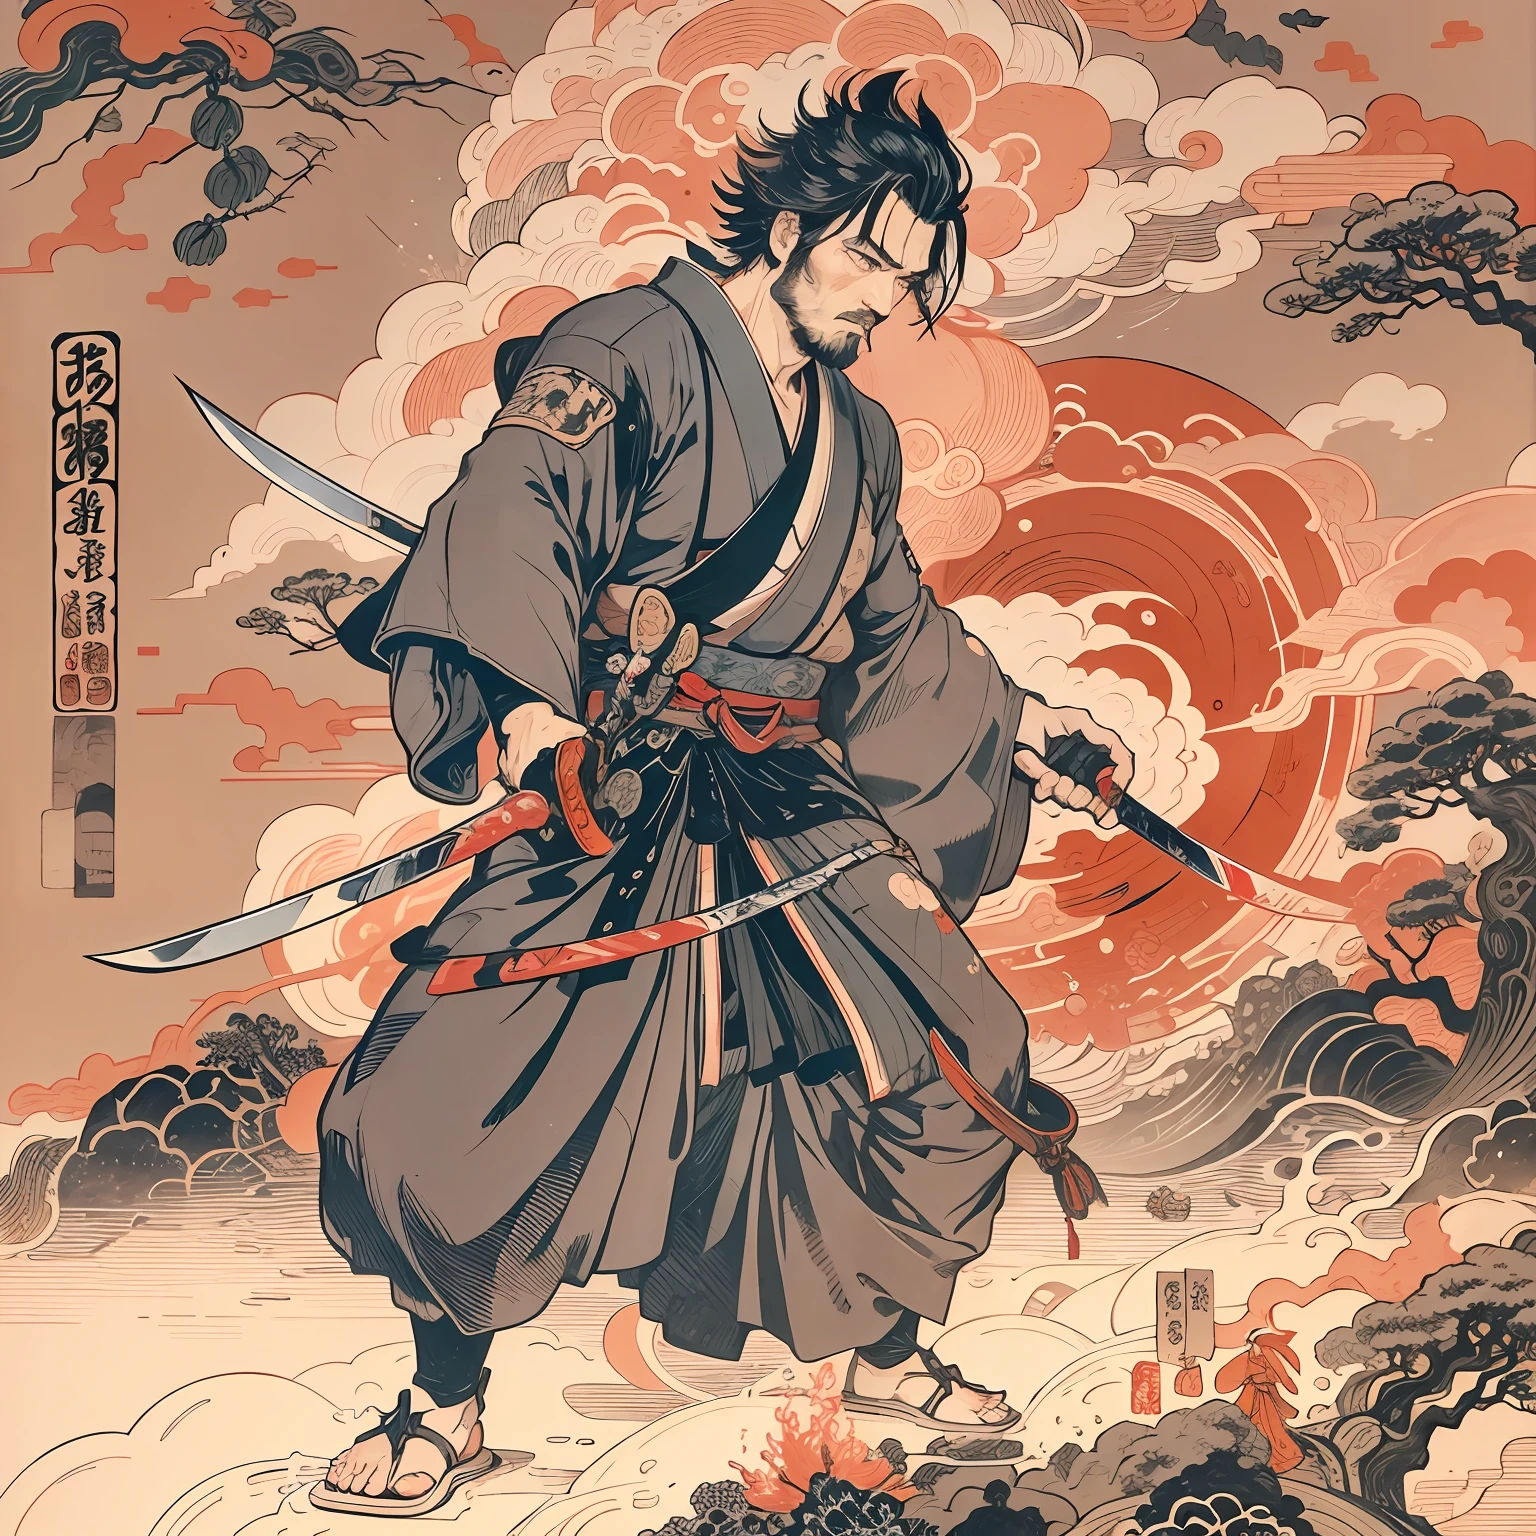 Es handelt sich um ein Ganzkörpergemälde mit natürlichen Farben und Strichzeichnungen im Stil von Katsushika Hokusai. Der Schwertkämpfer Miyamoto Musashi ist ein japanischer Samurai mit einem großen und starken Körperbau wie ein professioneller Wrestler. Sein Gesicht ist sehr würdevoll. Er hat auch kurze schwarze Haare und einen kurzen, gestutzter Bart. Sein Oberkörper ist mit einem schwarzen Kimono bedeckt und sein Hakama ist knielang. In seiner rechten Hand hält er ein Japanschwert mit einem längeren Schwertteil. gute Qualität, Meisterwerk hochauflösender Ukiyo-e-Stil mit scharfen leuchtenden Blitzen und wirbelnden roten Flammen. Miyamoto Musashi schwingt sein Schwert kraftvoll nach unten in Richtung des Gegners vor ihm.. Ein Schwert und zwei Schnitte